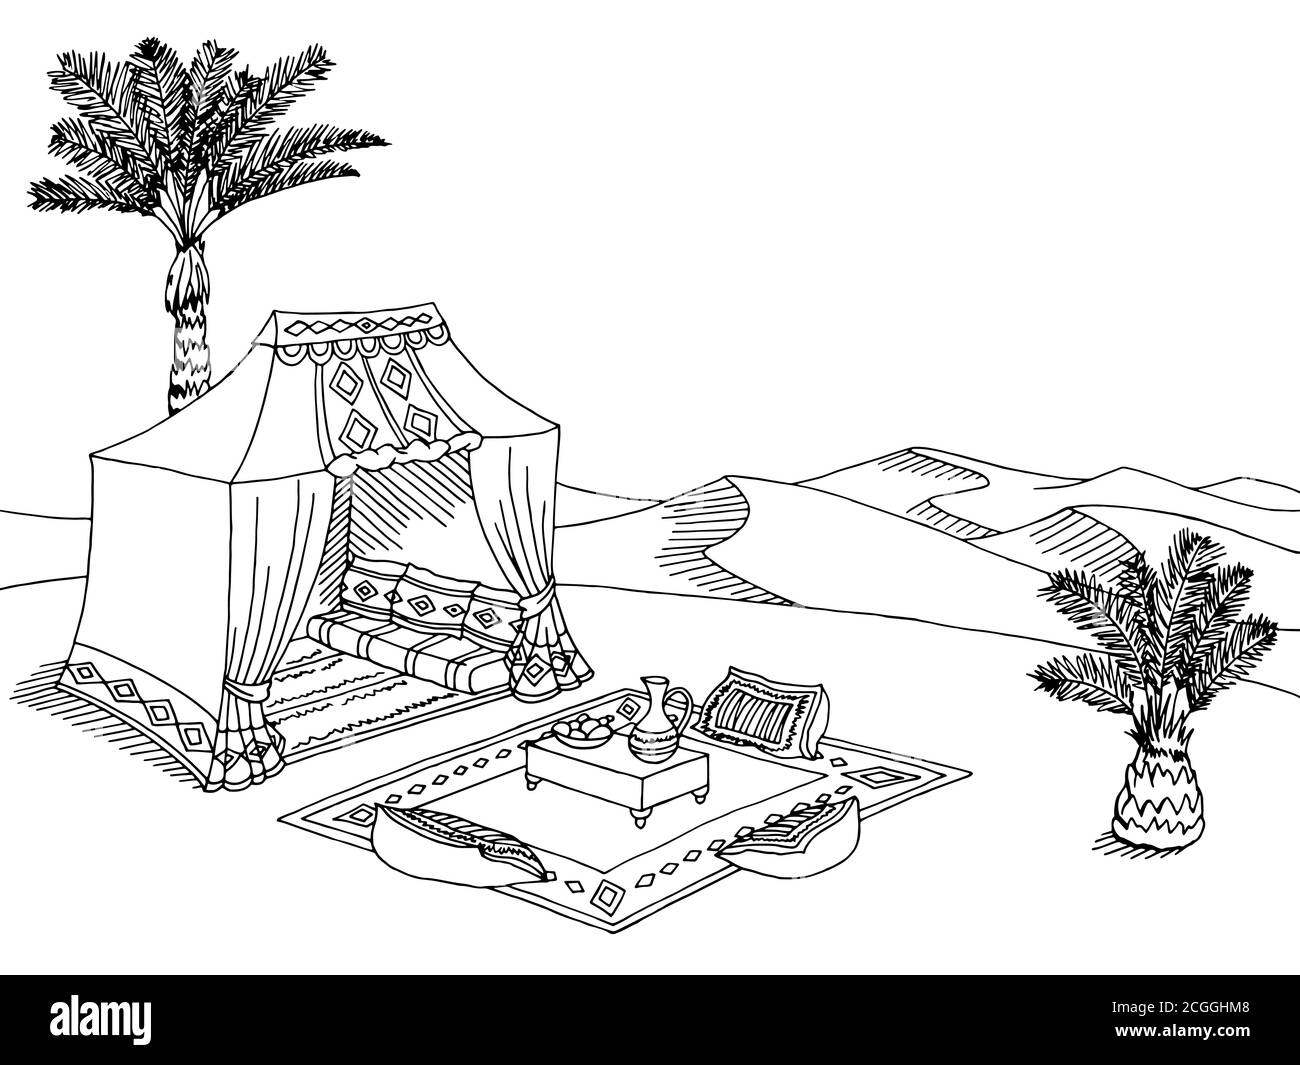 Desert tente graphique noir blanc paysage dessin illustration vecteur Illustration de Vecteur